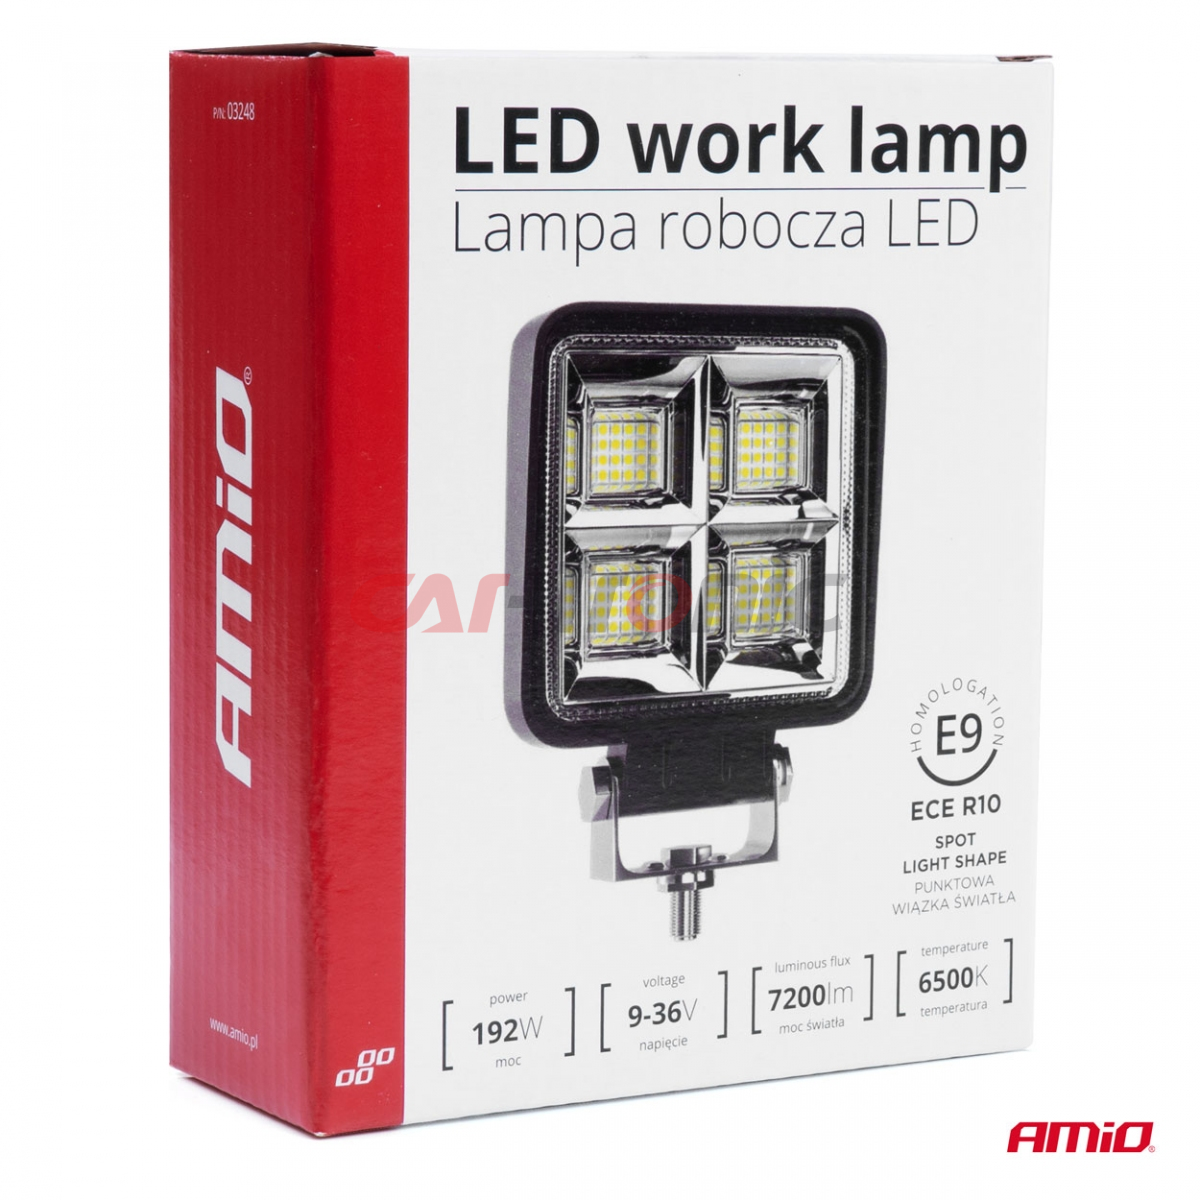 Lampa robocza halogen LED szperacz AWL38 64 LED AMIO-03249